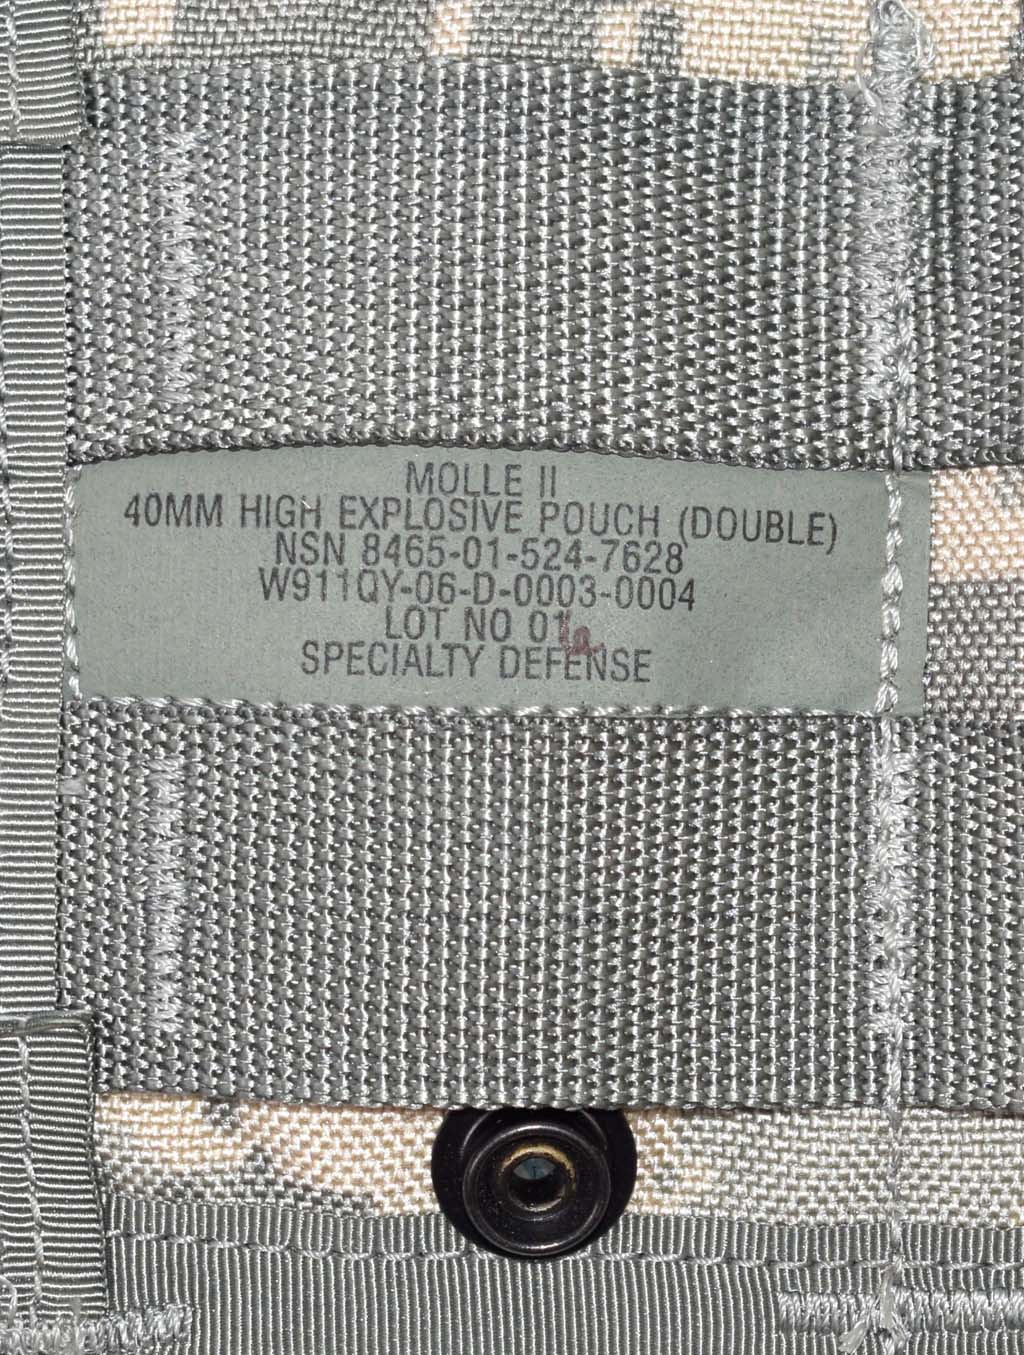 Подсумок гранатный 40mm High Expl. Double acu США